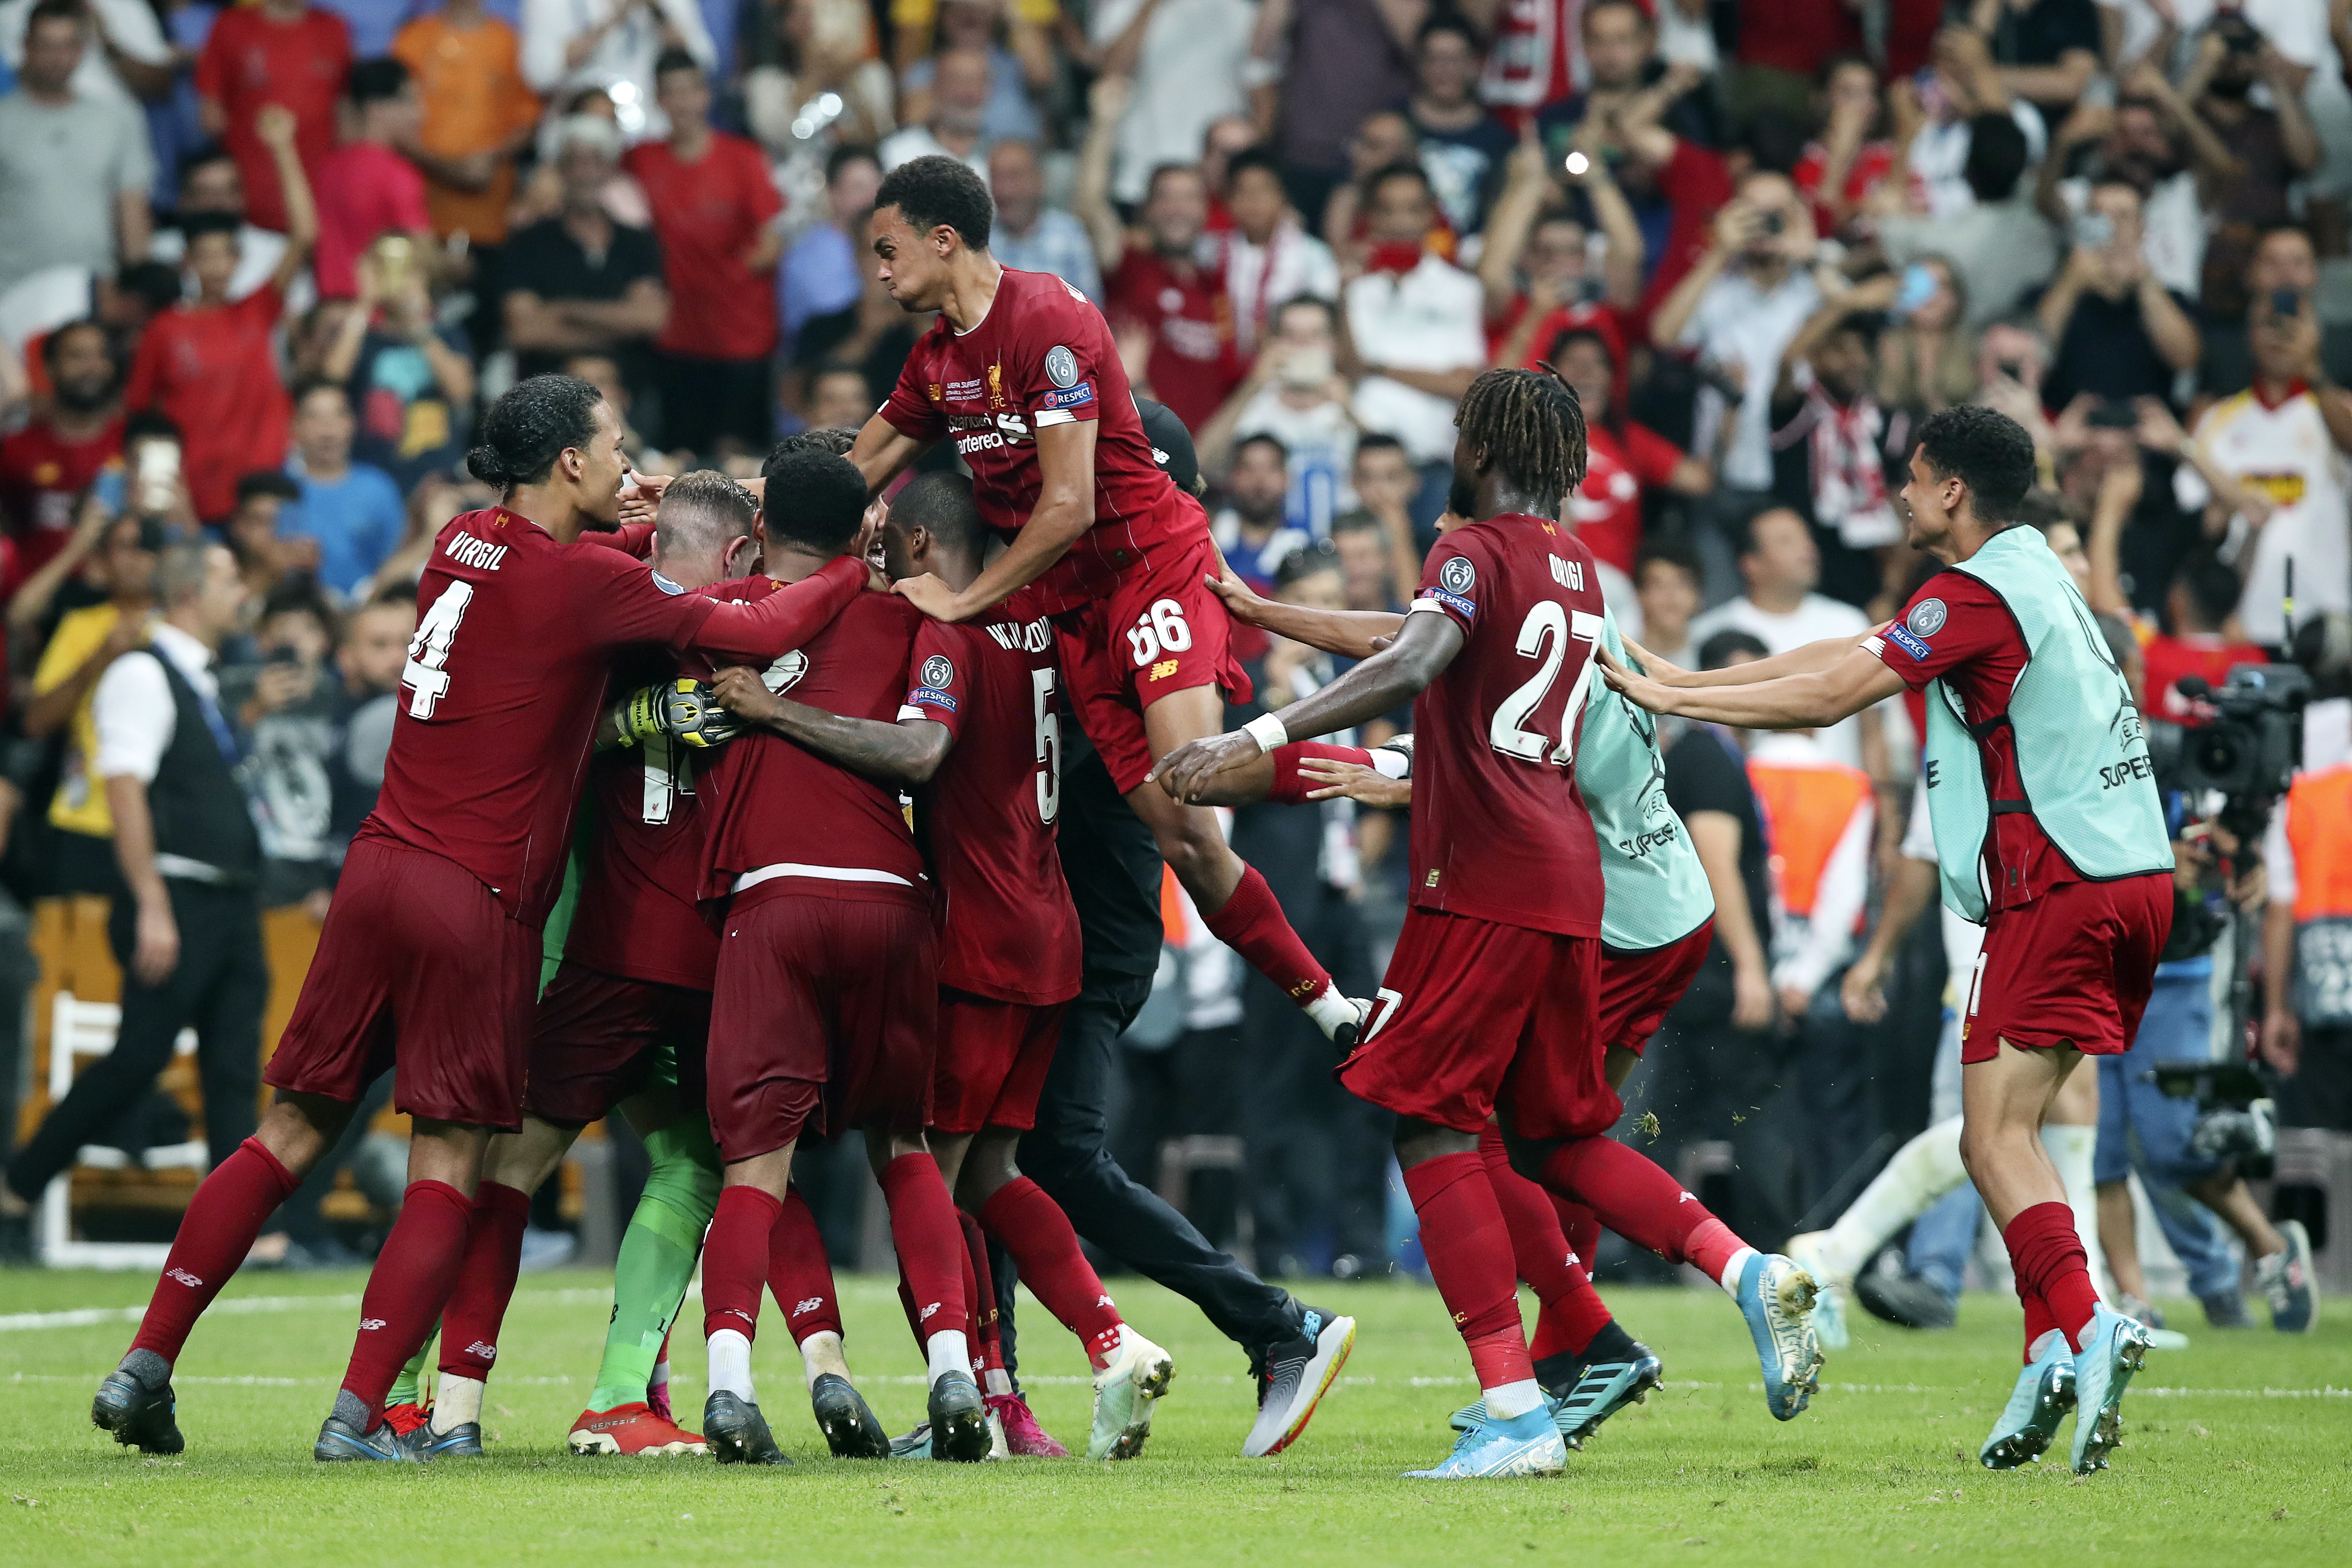 当日,在土耳其伊斯坦布尔进行的2019年欧洲超级杯足球赛中,英超利物浦